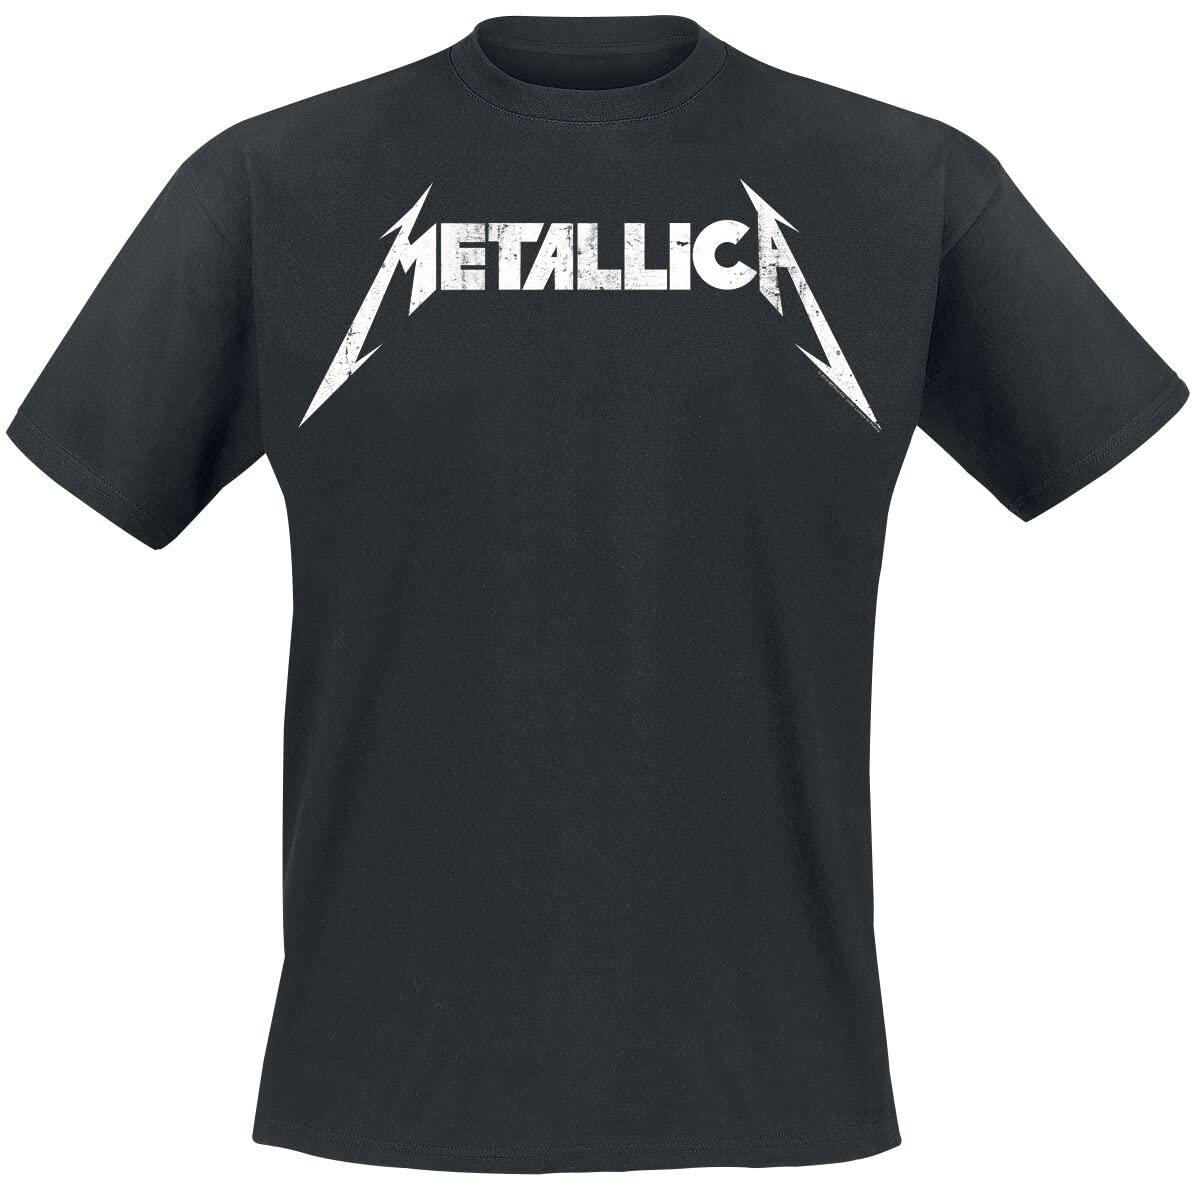 Metallica Textured Logo Männer T-Shirt schwarz XXL 100% Baumwolle Band-Merch, Bands